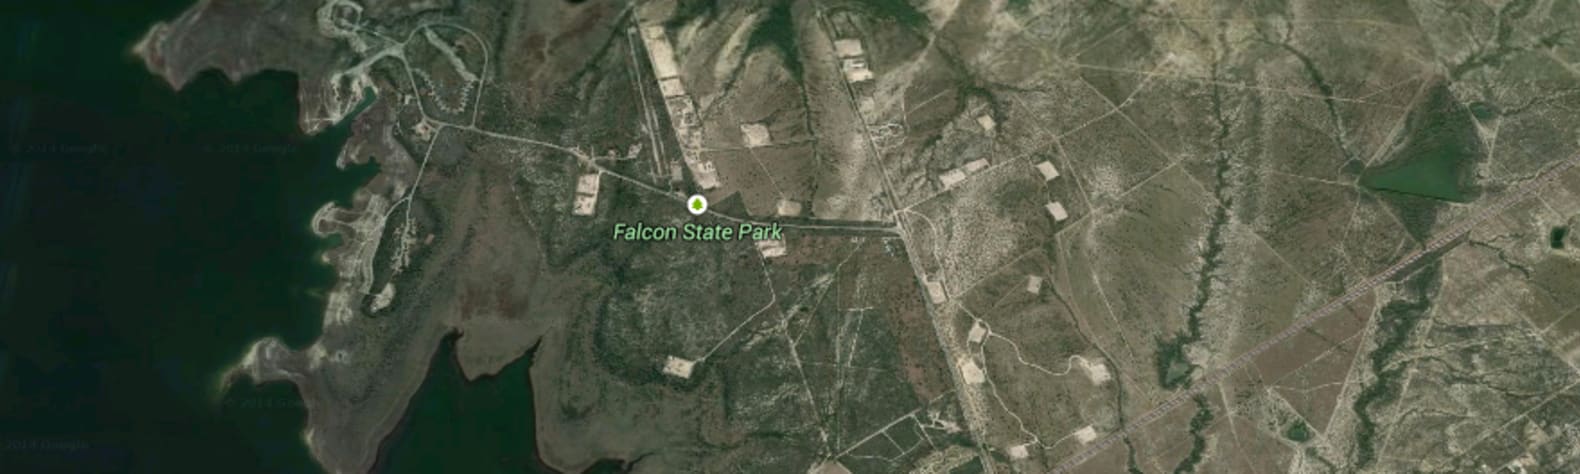 Falcon State Park